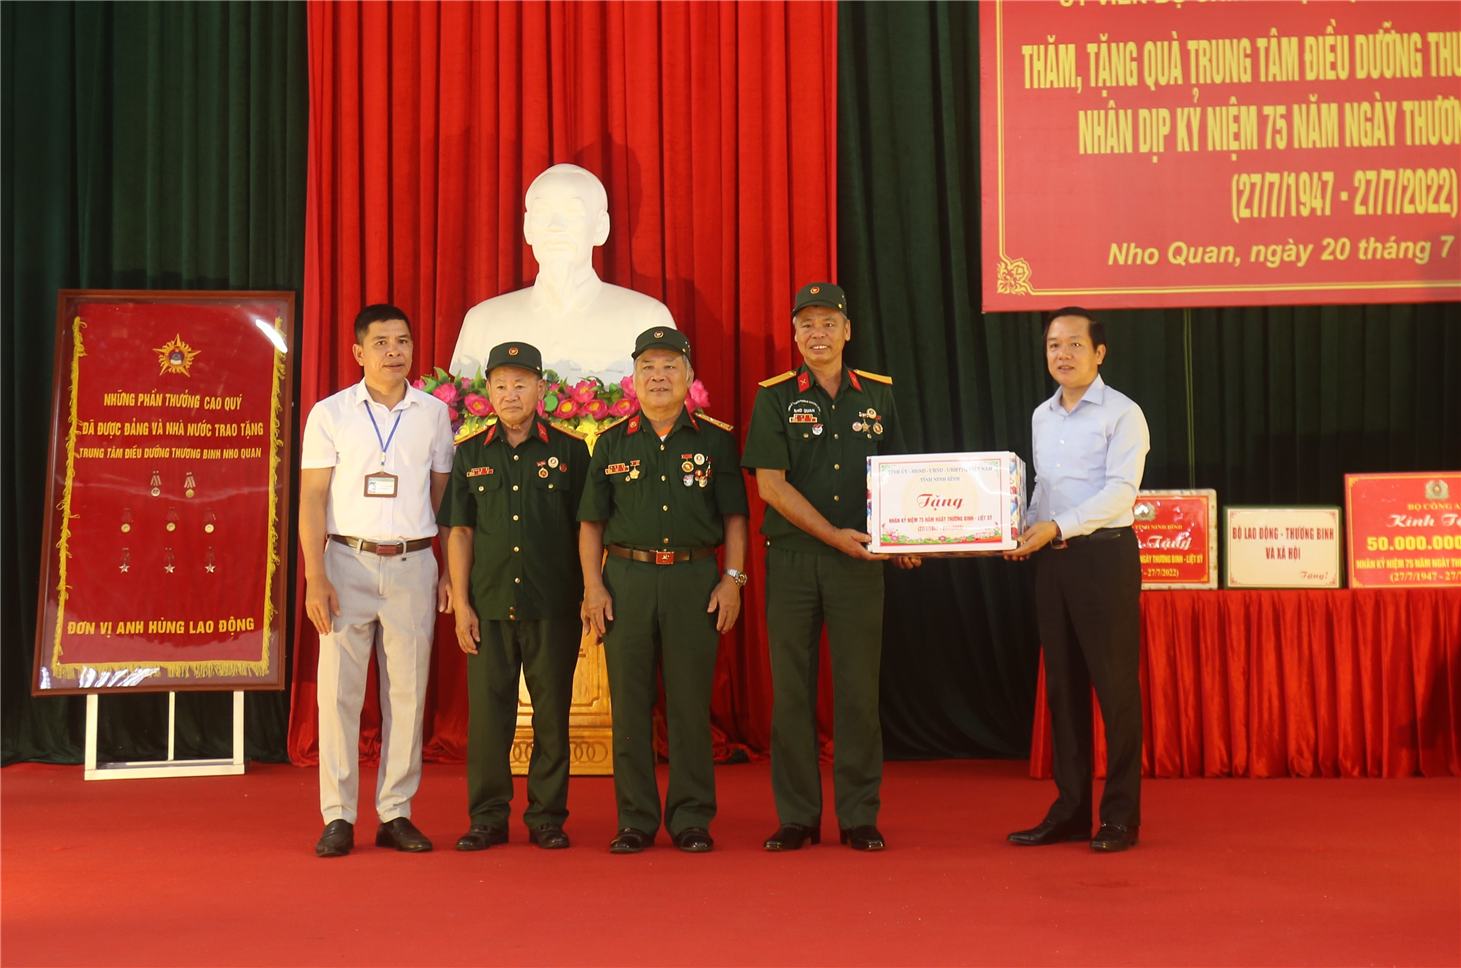 Bộ trưởng Tô Lâm và các đại biểu tặng quà Trung tâm.